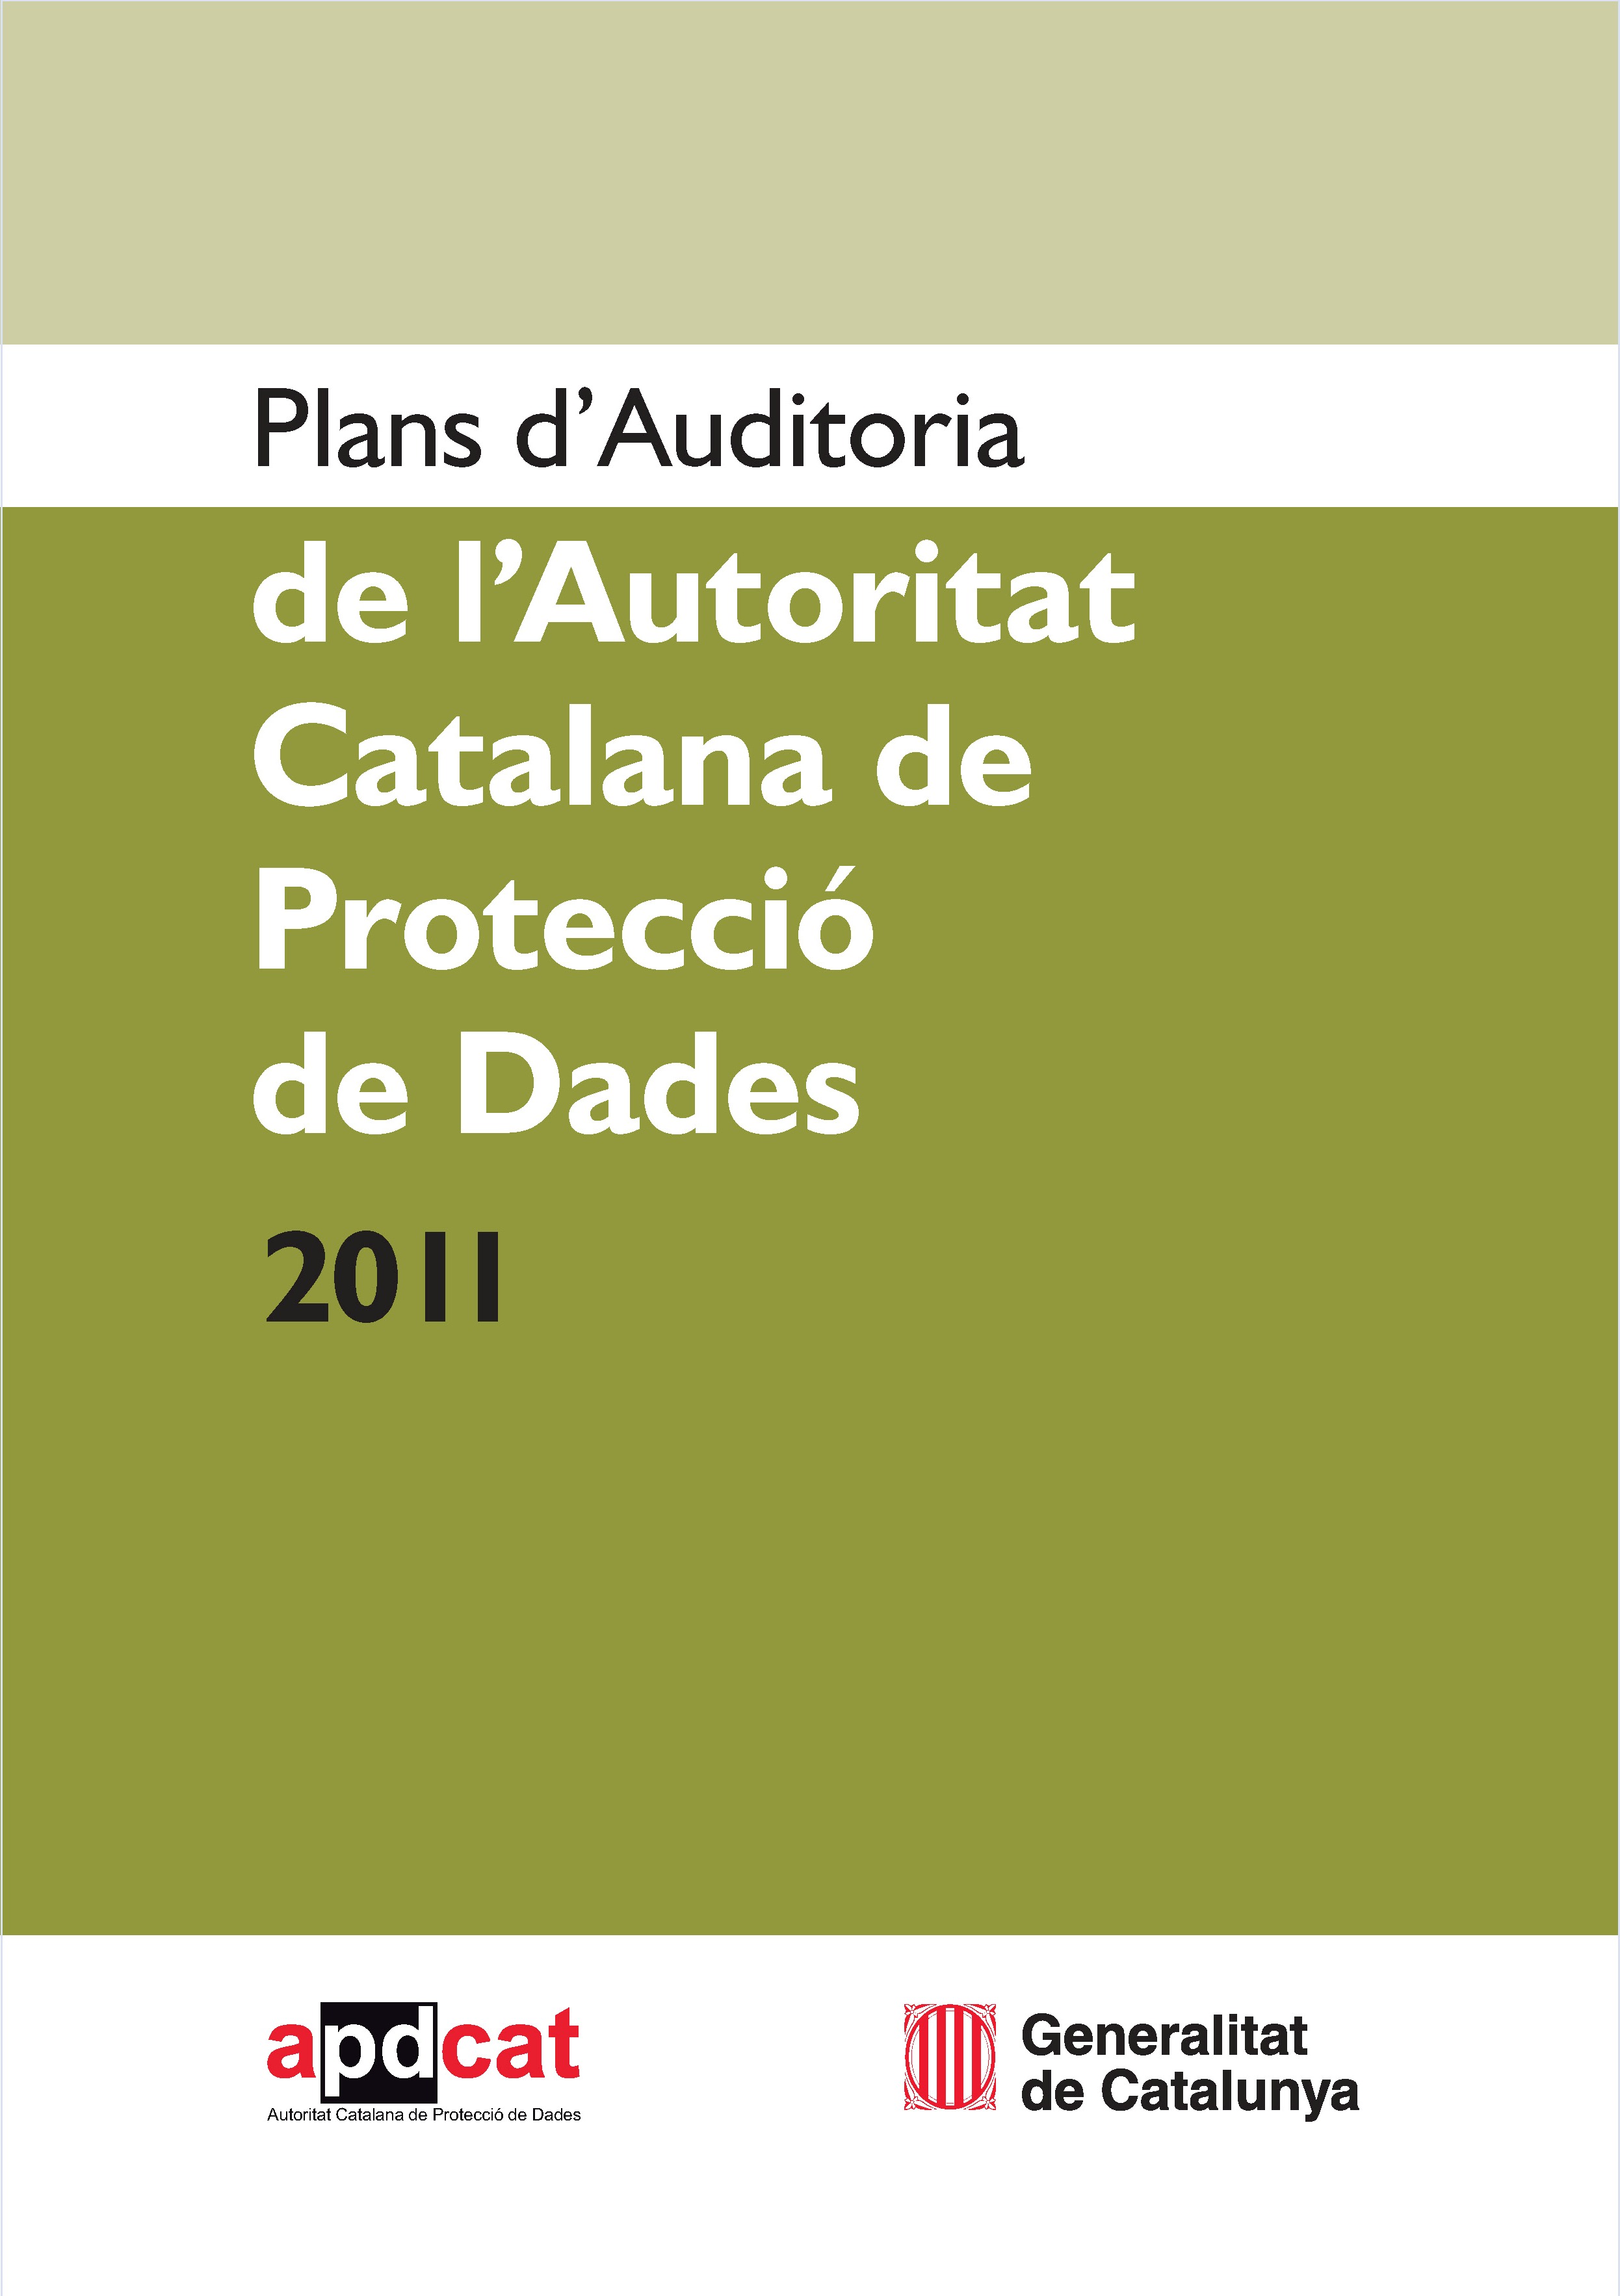 Plans d'Auditoria de l'Autoritat Catalana de Protecció de Dades 2011. Informe de conclusions del Pla d'auditoria per a la verificació del dret d'informació en la recollida de dades de caràcter personal (compliment de l'art. 5 de la Llei orgànica 15/1999, de 13 de desembre, de protecció de dades de caràcter personal